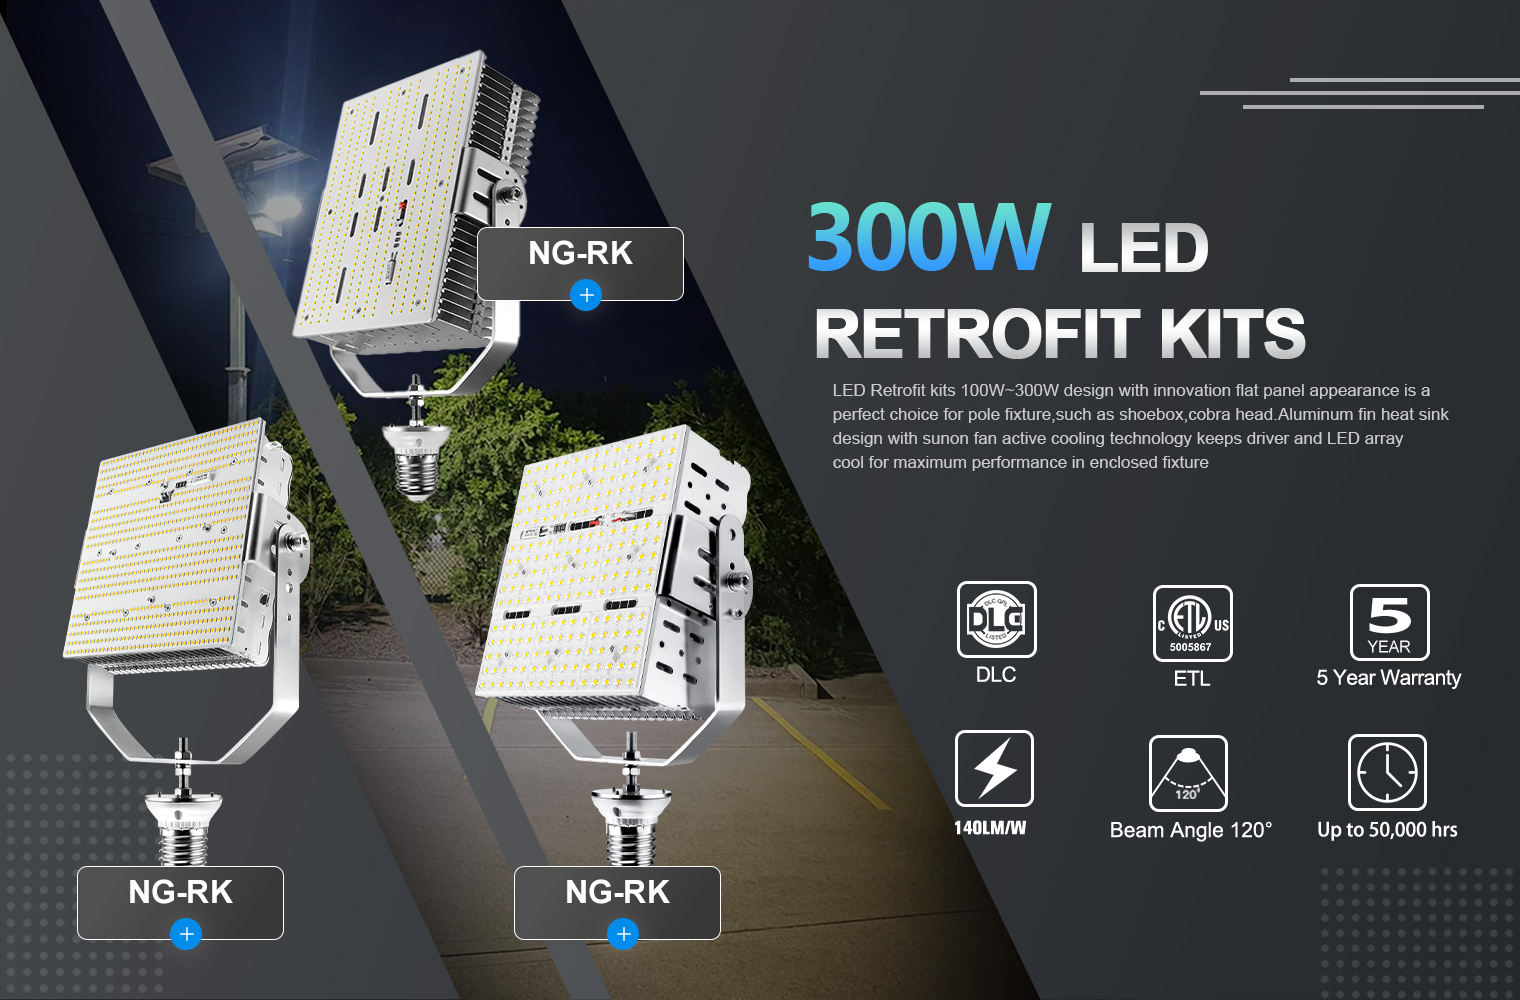 300W LED Retrofit kits